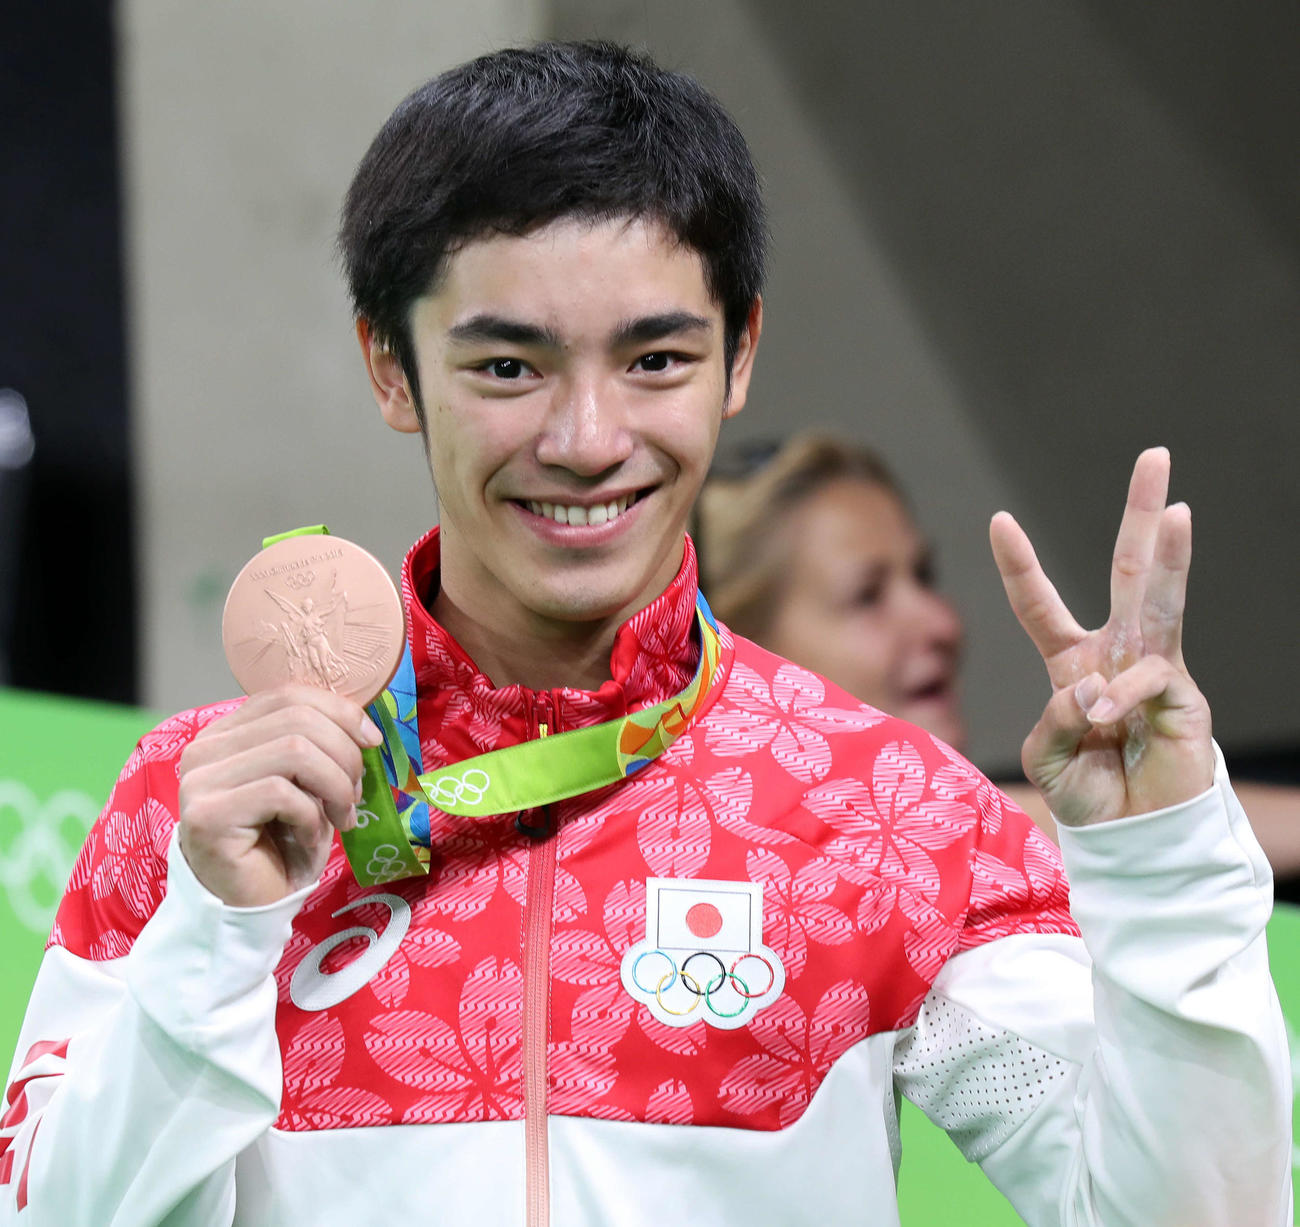 16年8月15日、リオデジャネイロ五輪体操男子種目別跳馬で銅メダルを獲得した白井健三はメダルを手に、3位と指を立てて笑顔を見せる